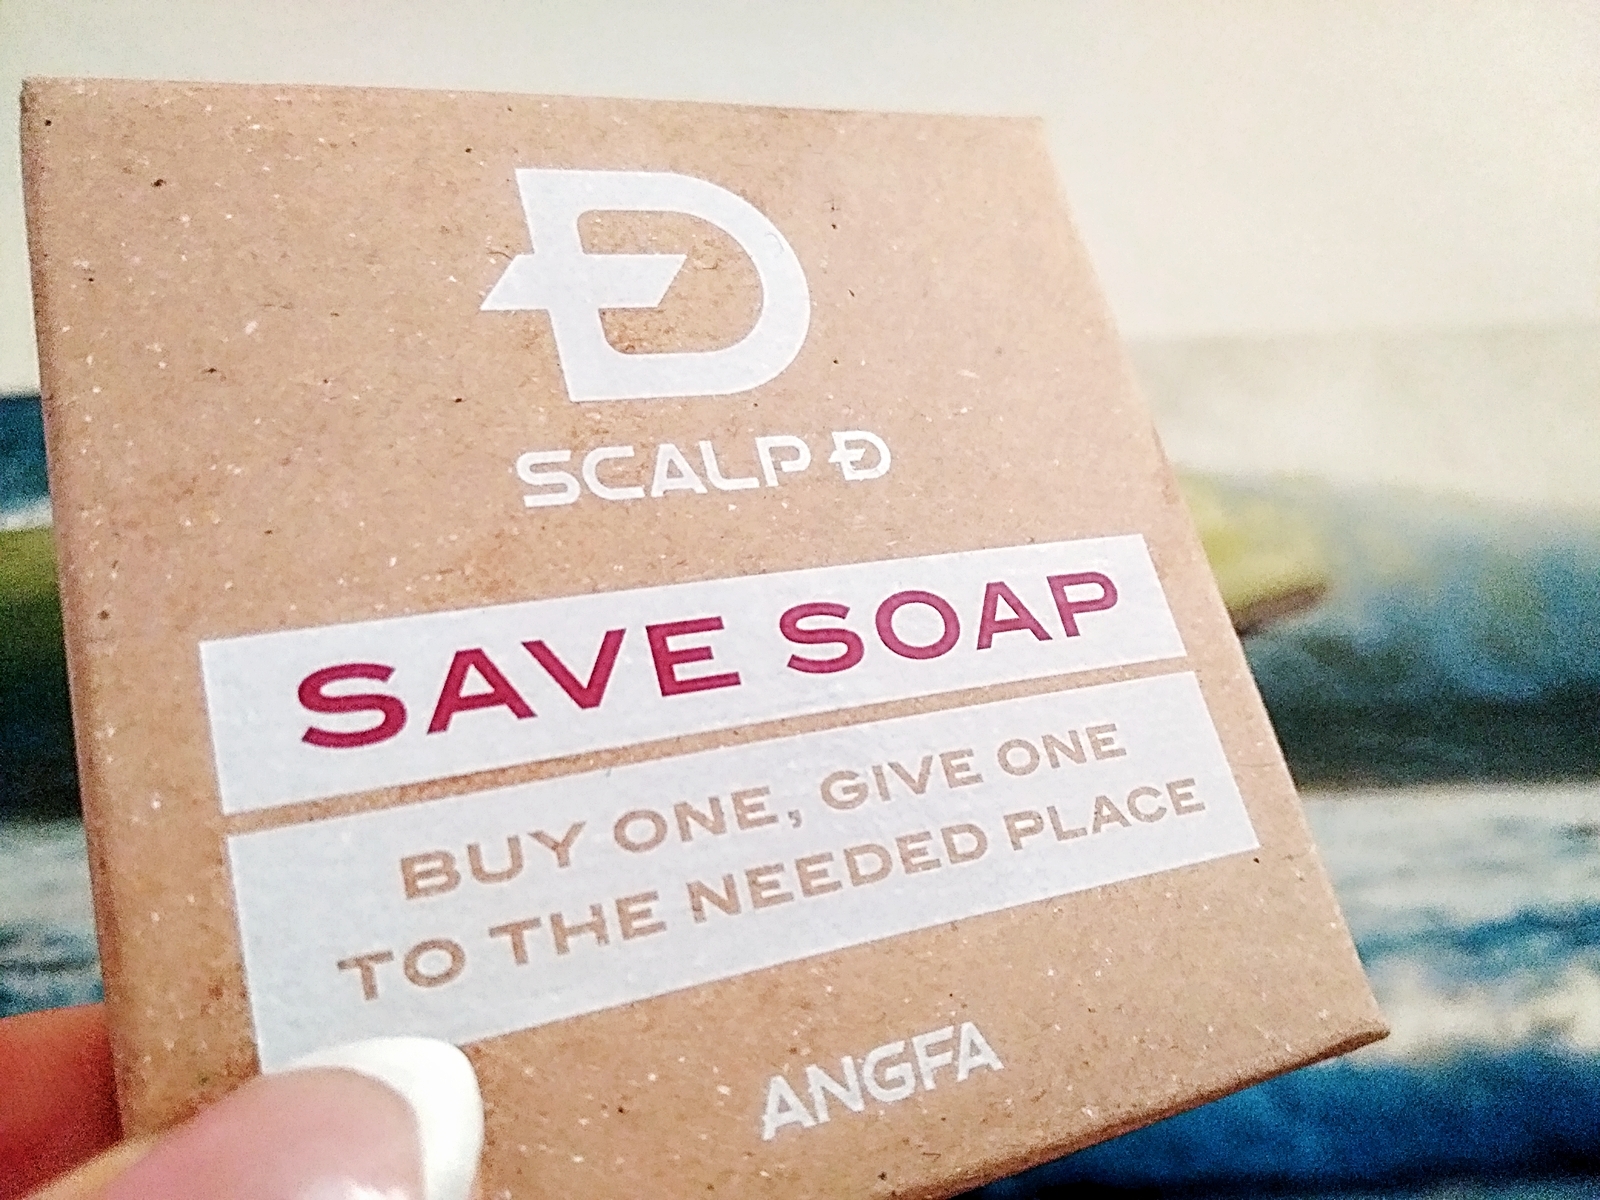 【スカルプD SAVE SOAP】でこどもたちに笑顔を届けられるプロジェクト